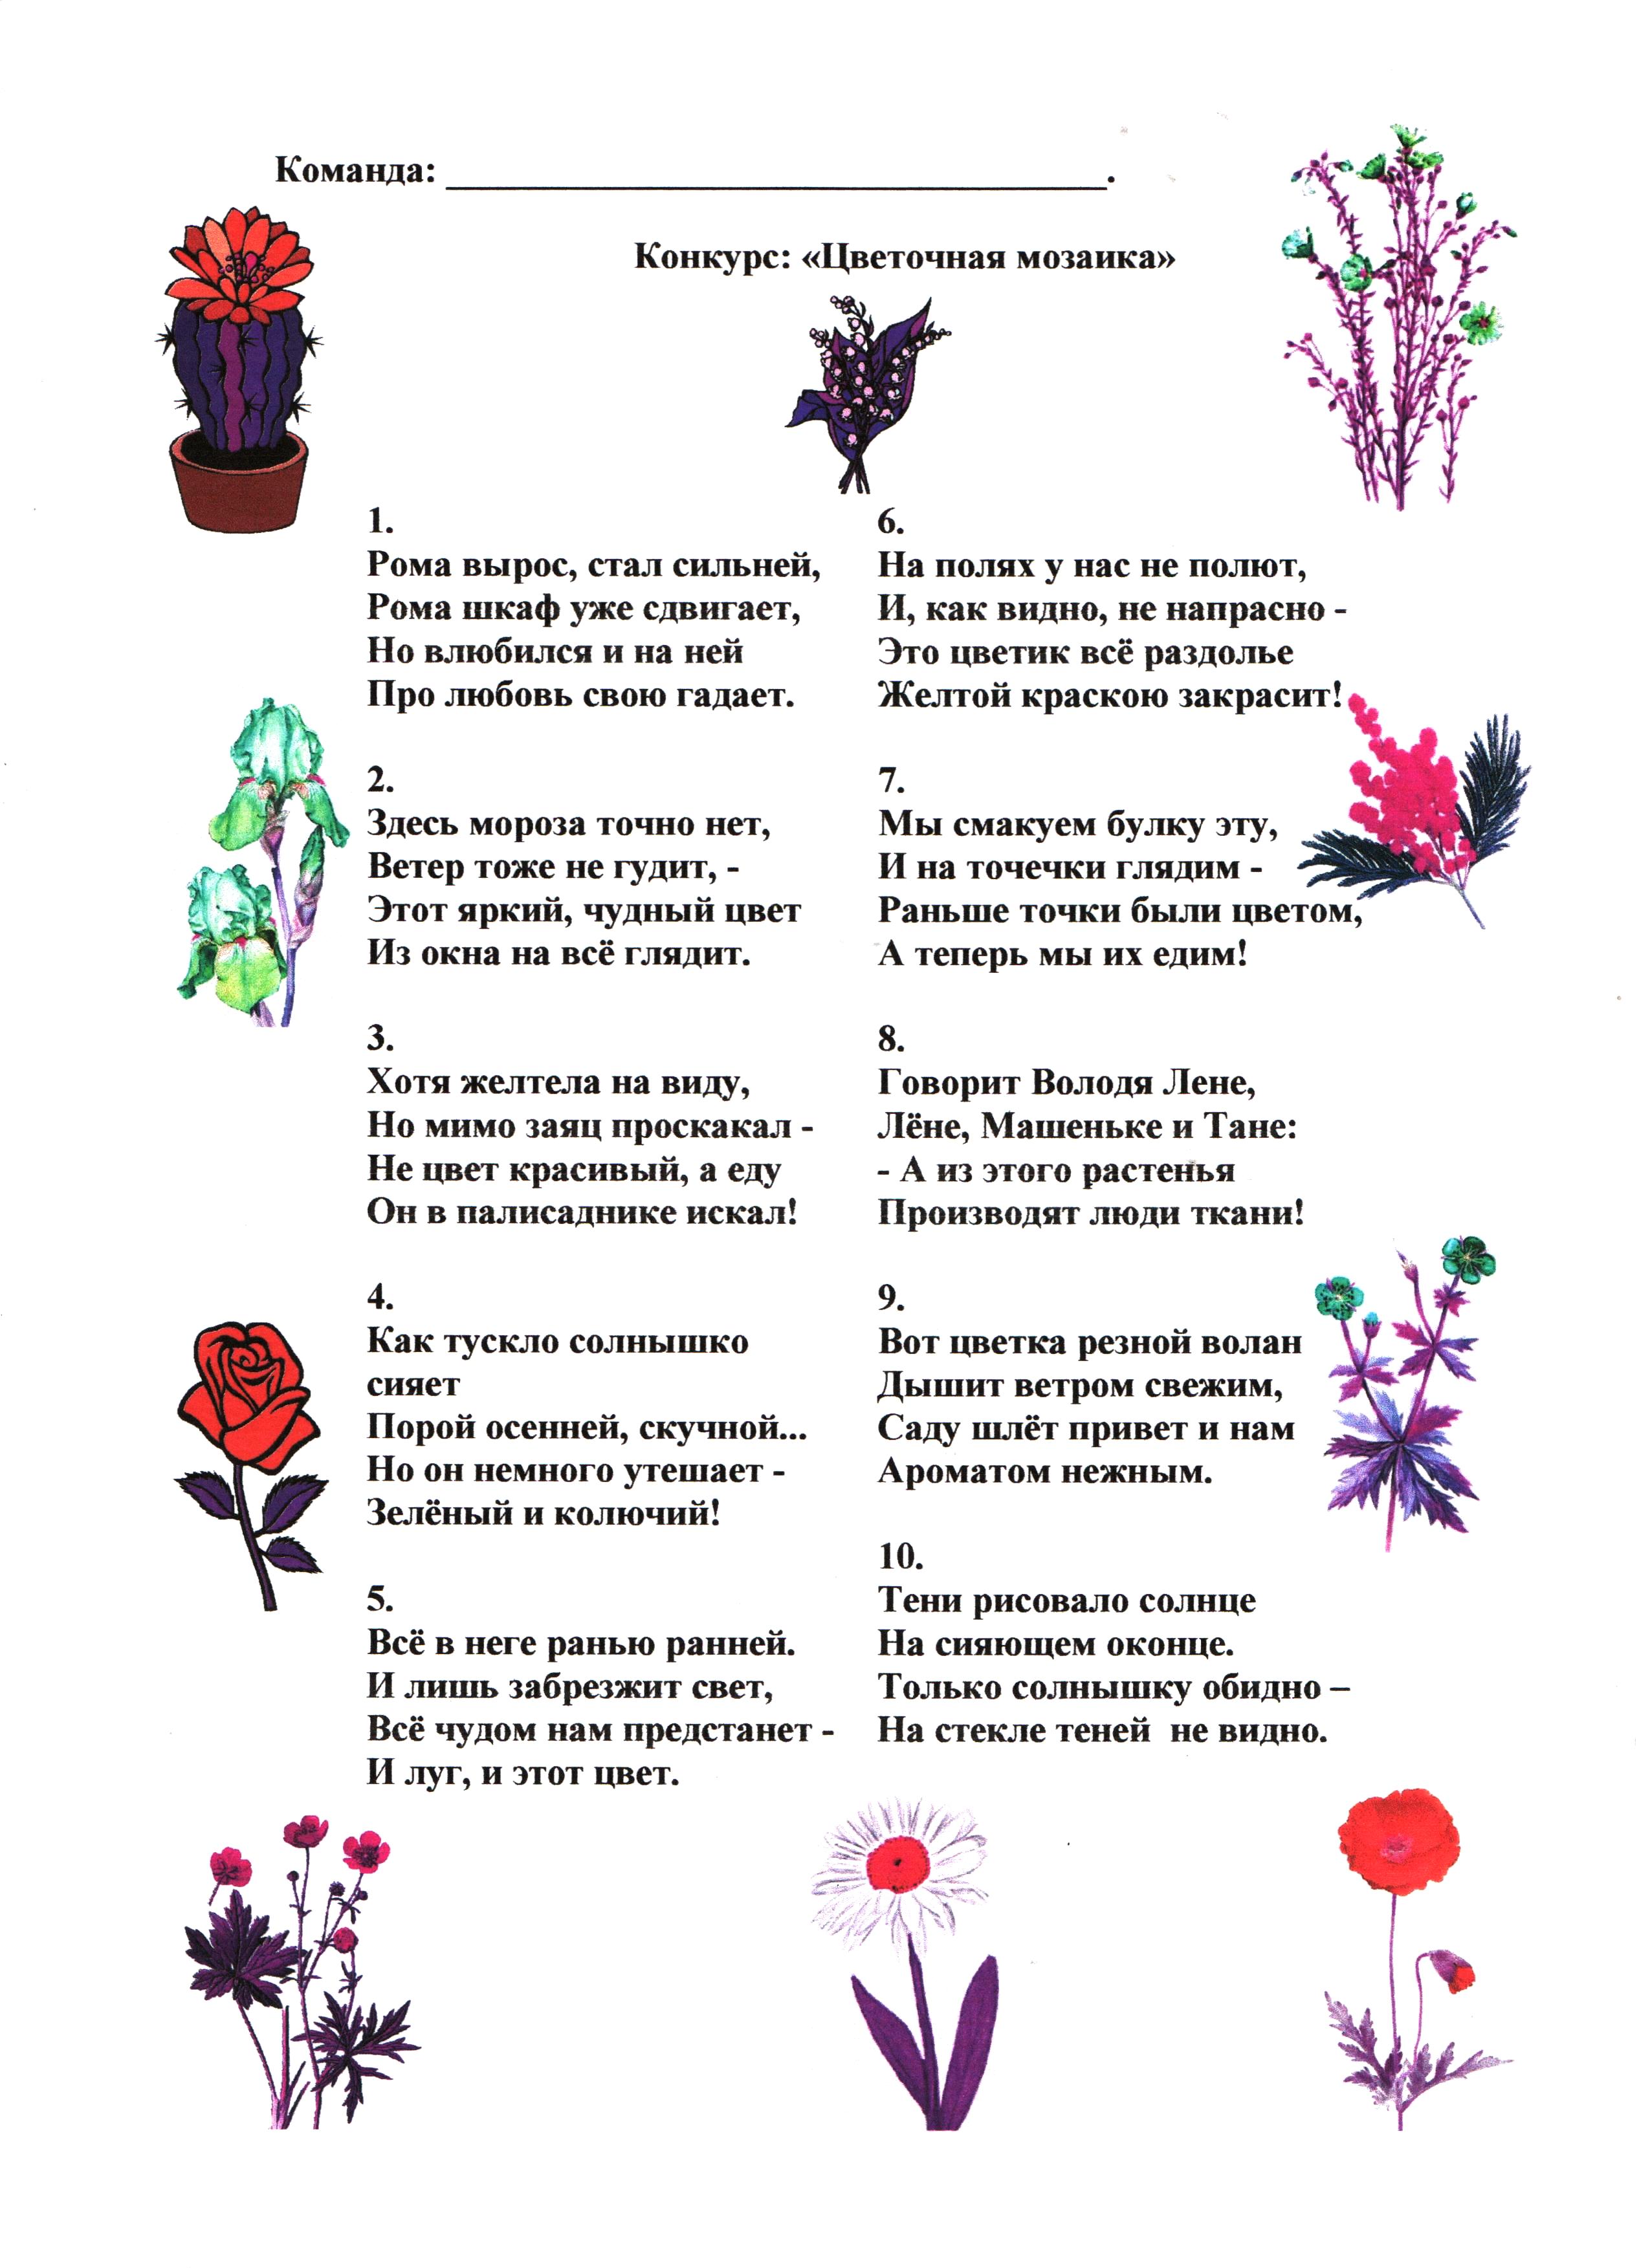 Загадки про цветы для дошкольников. Загадки для детей 7 -8 с ответами про растения. Загадки про цветы с прилагательными. Загадки про цветы. Загадки про цветы для детей.